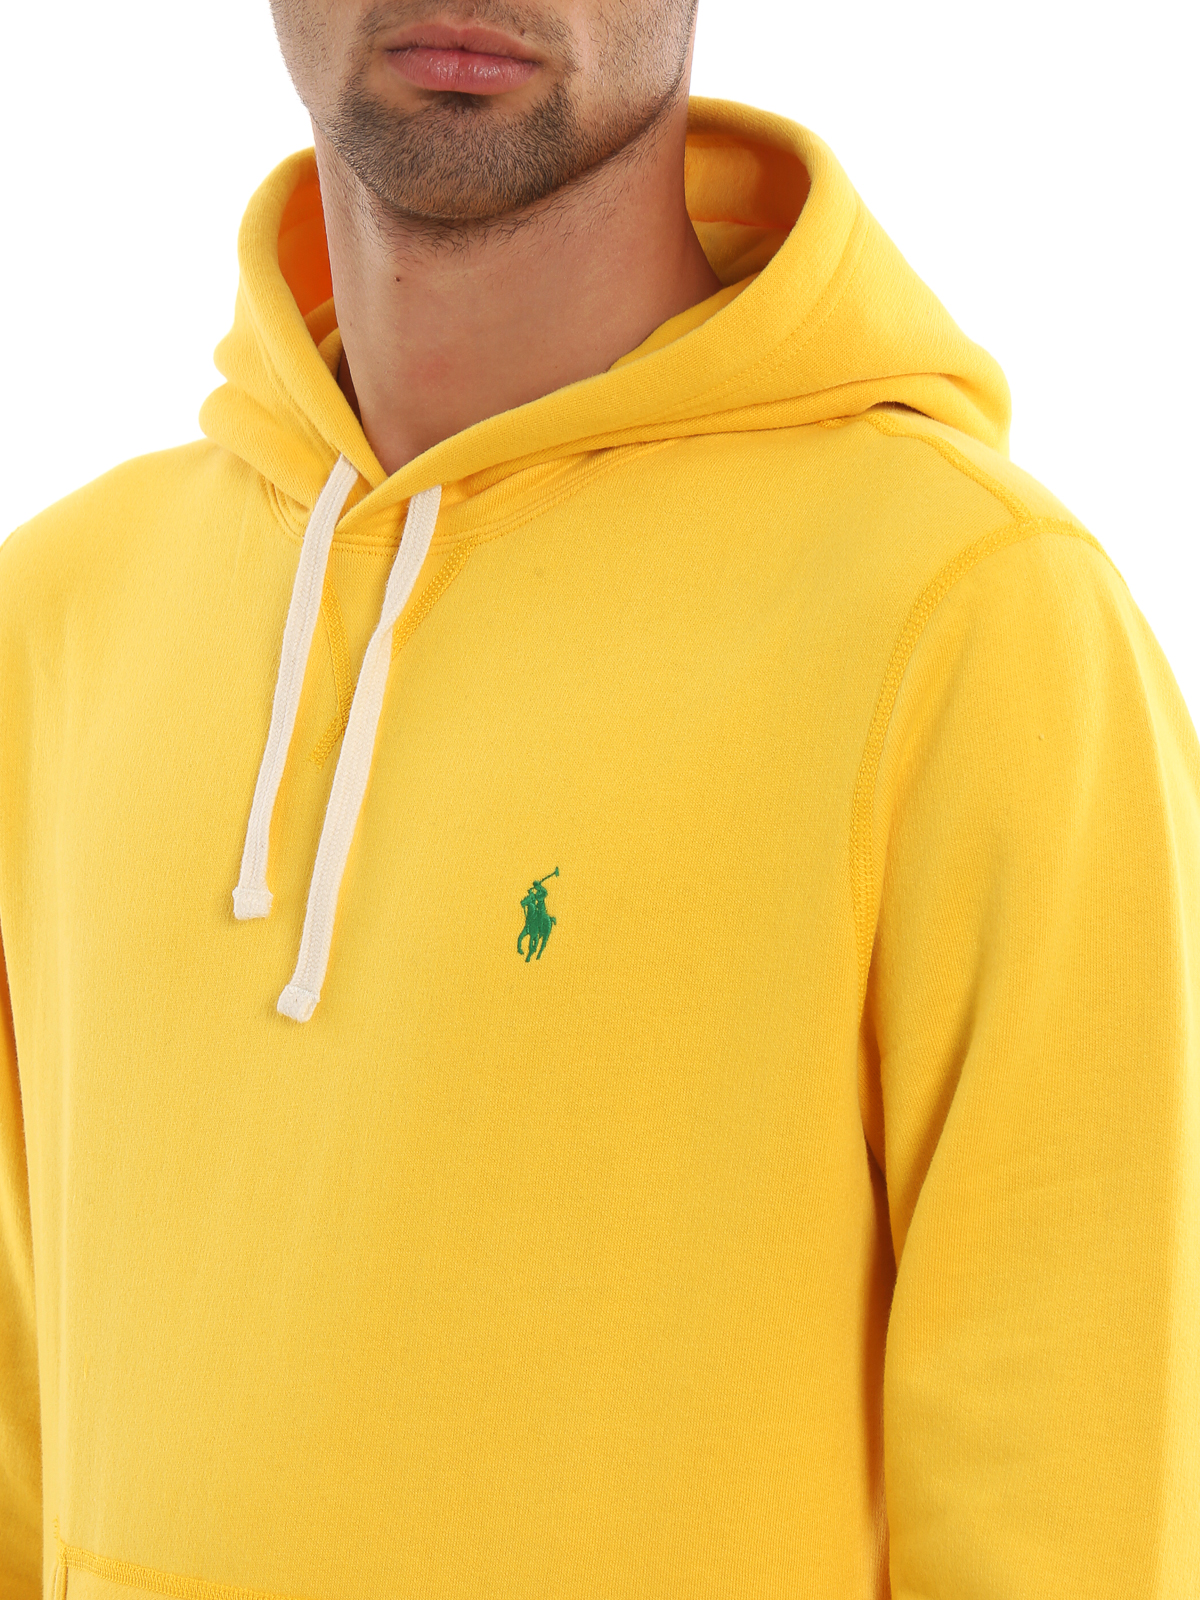 Sweatshirts & Sweaters Polo Ralph Lauren - Yellow fleece hoodie -  710766778004